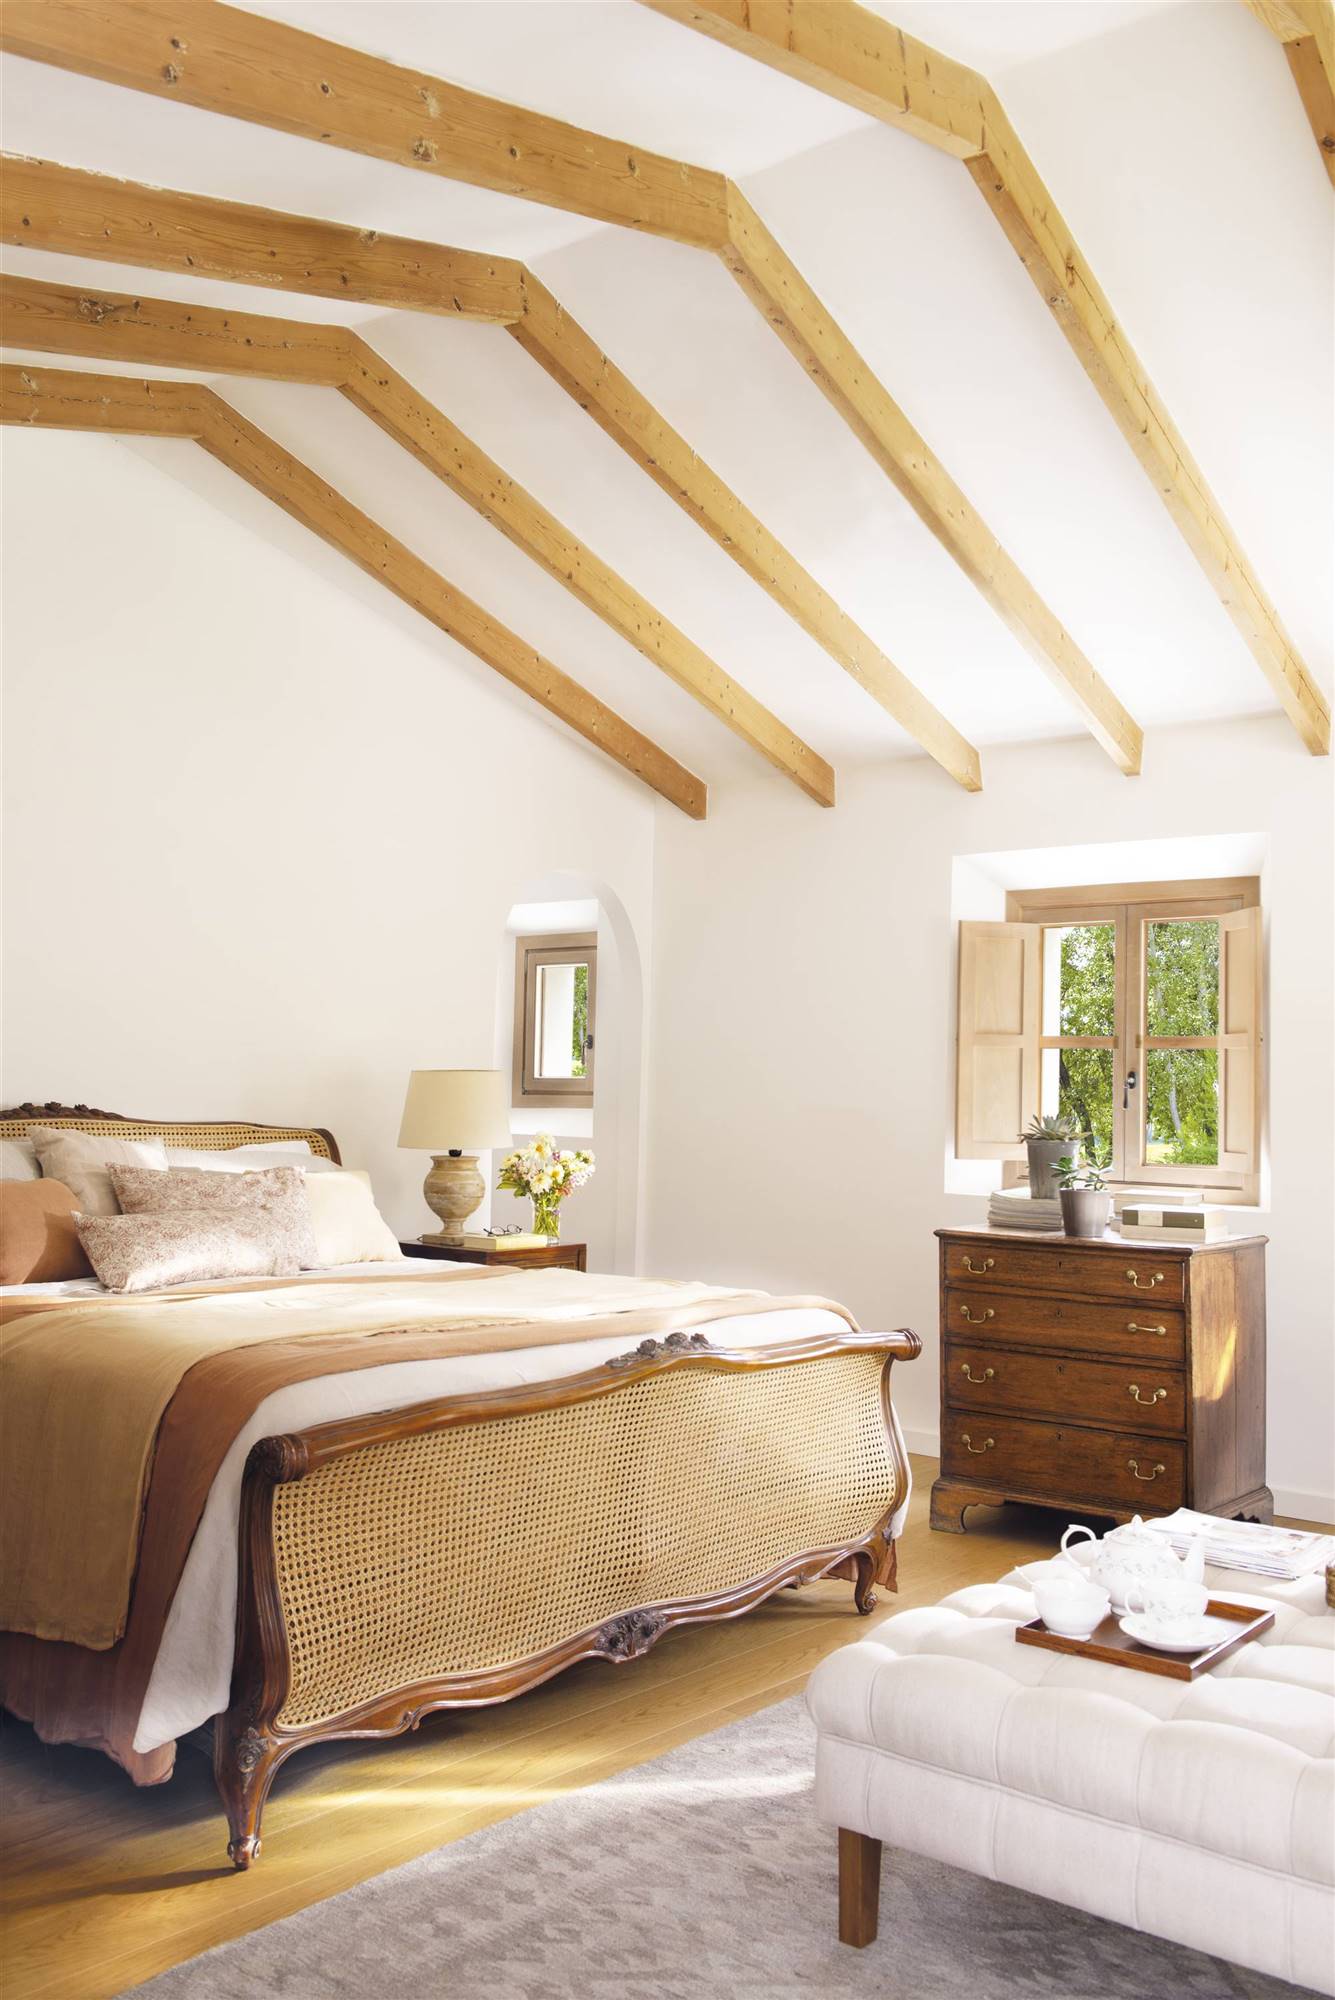 Dormitorio de verano de estilo clásico y con vigas de madera en tonos arena. 